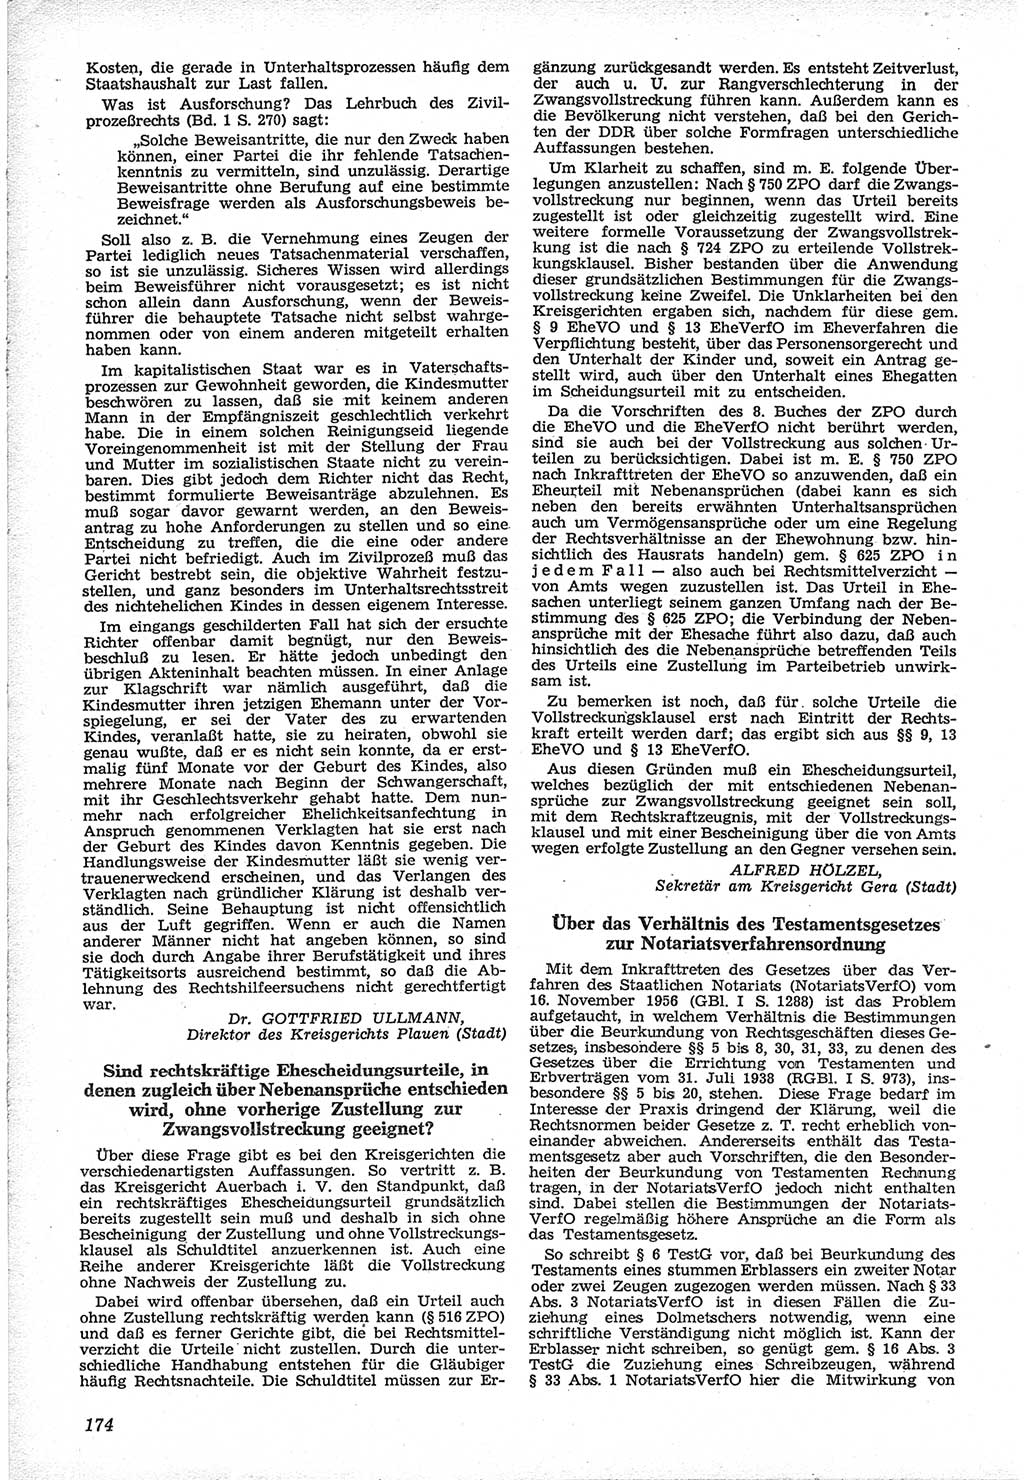 Neue Justiz (NJ), Zeitschrift für Recht und Rechtswissenschaft [Deutsche Demokratische Republik (DDR)], 12. Jahrgang 1958, Seite 174 (NJ DDR 1958, S. 174)